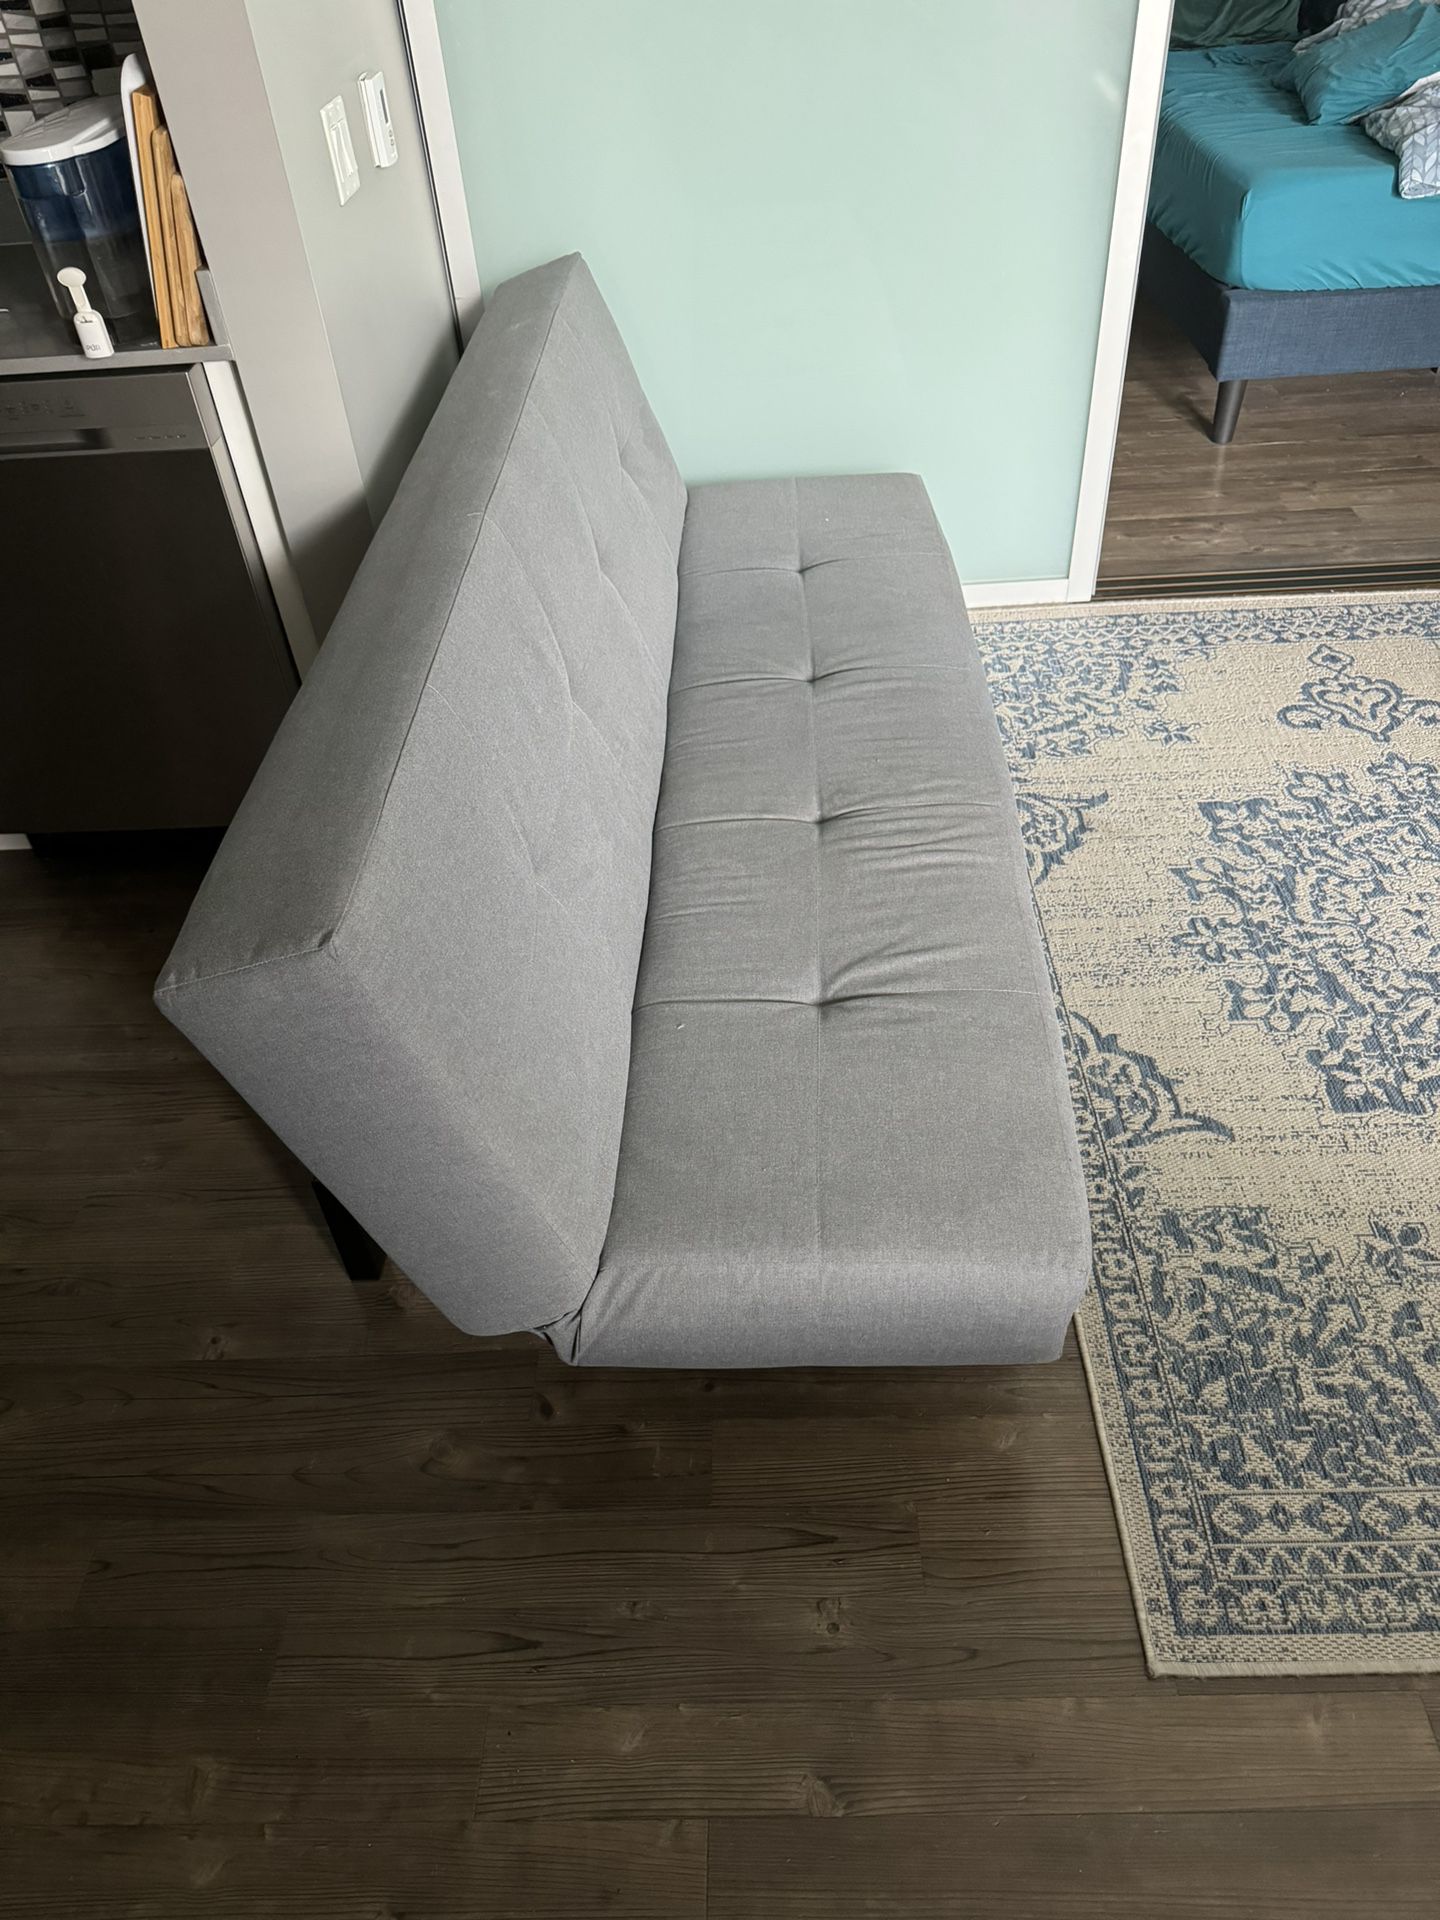 IKEA Futon Sofa Bed 